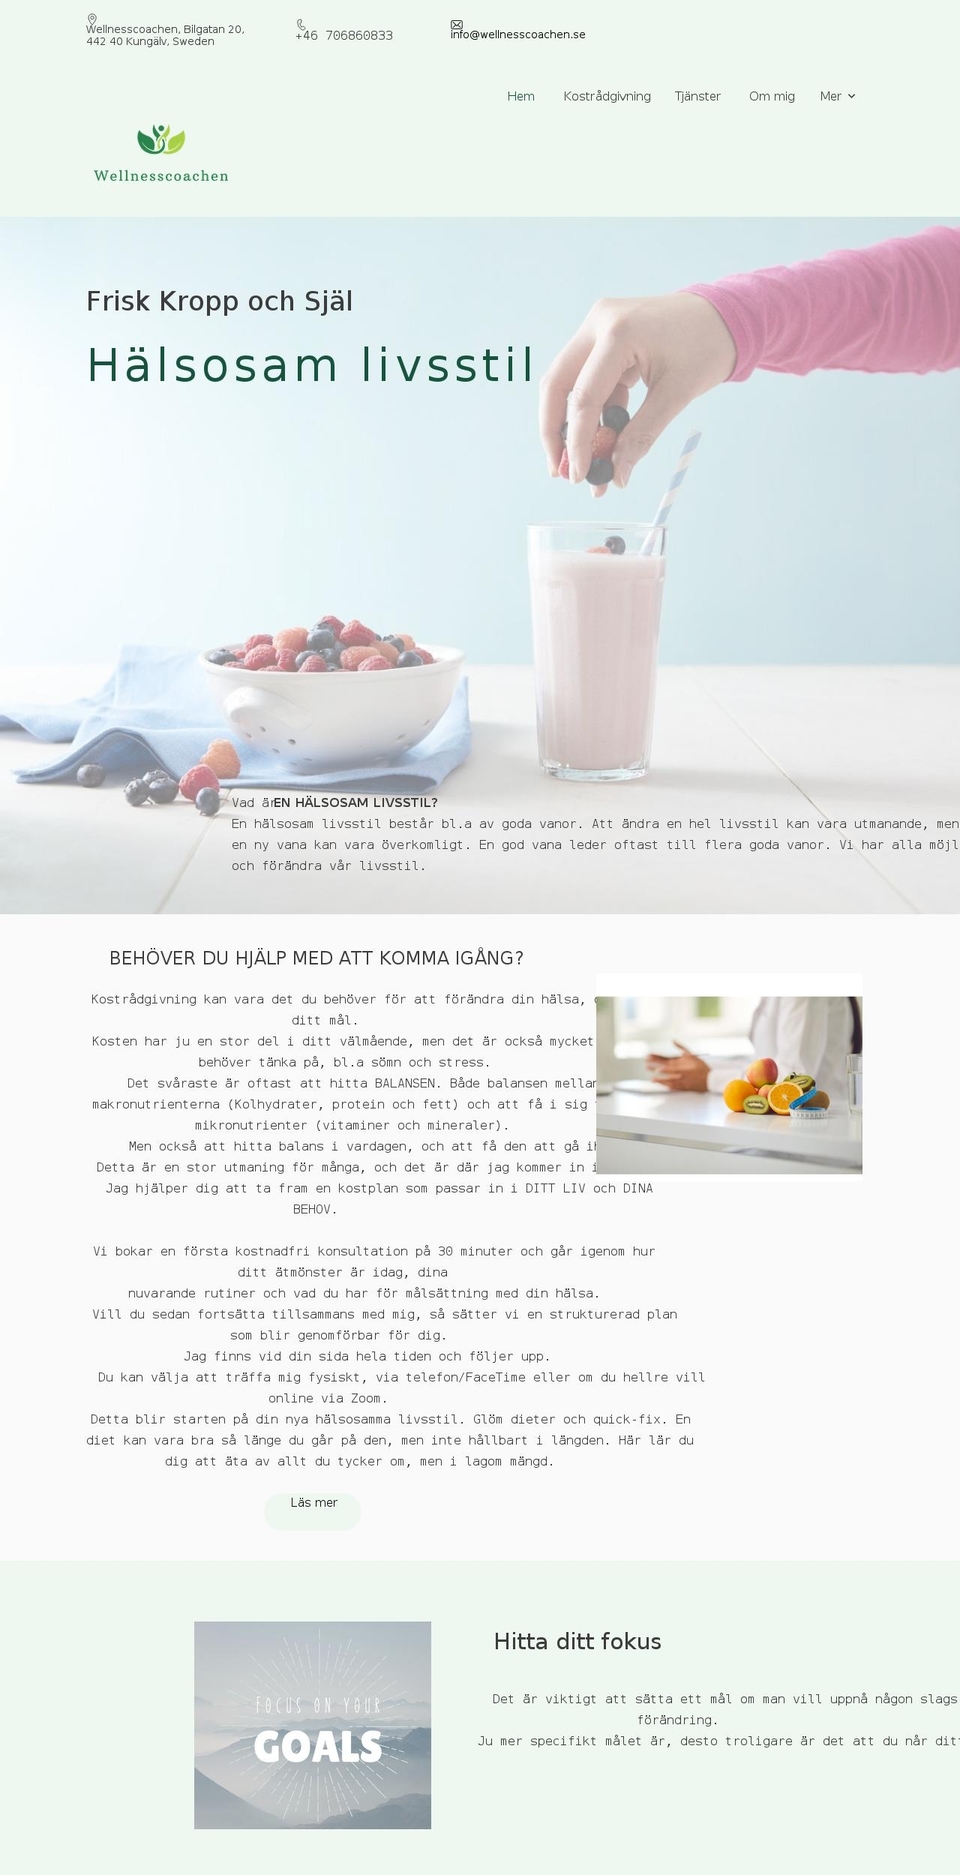 wellnesscoachen.one shopify website screenshot